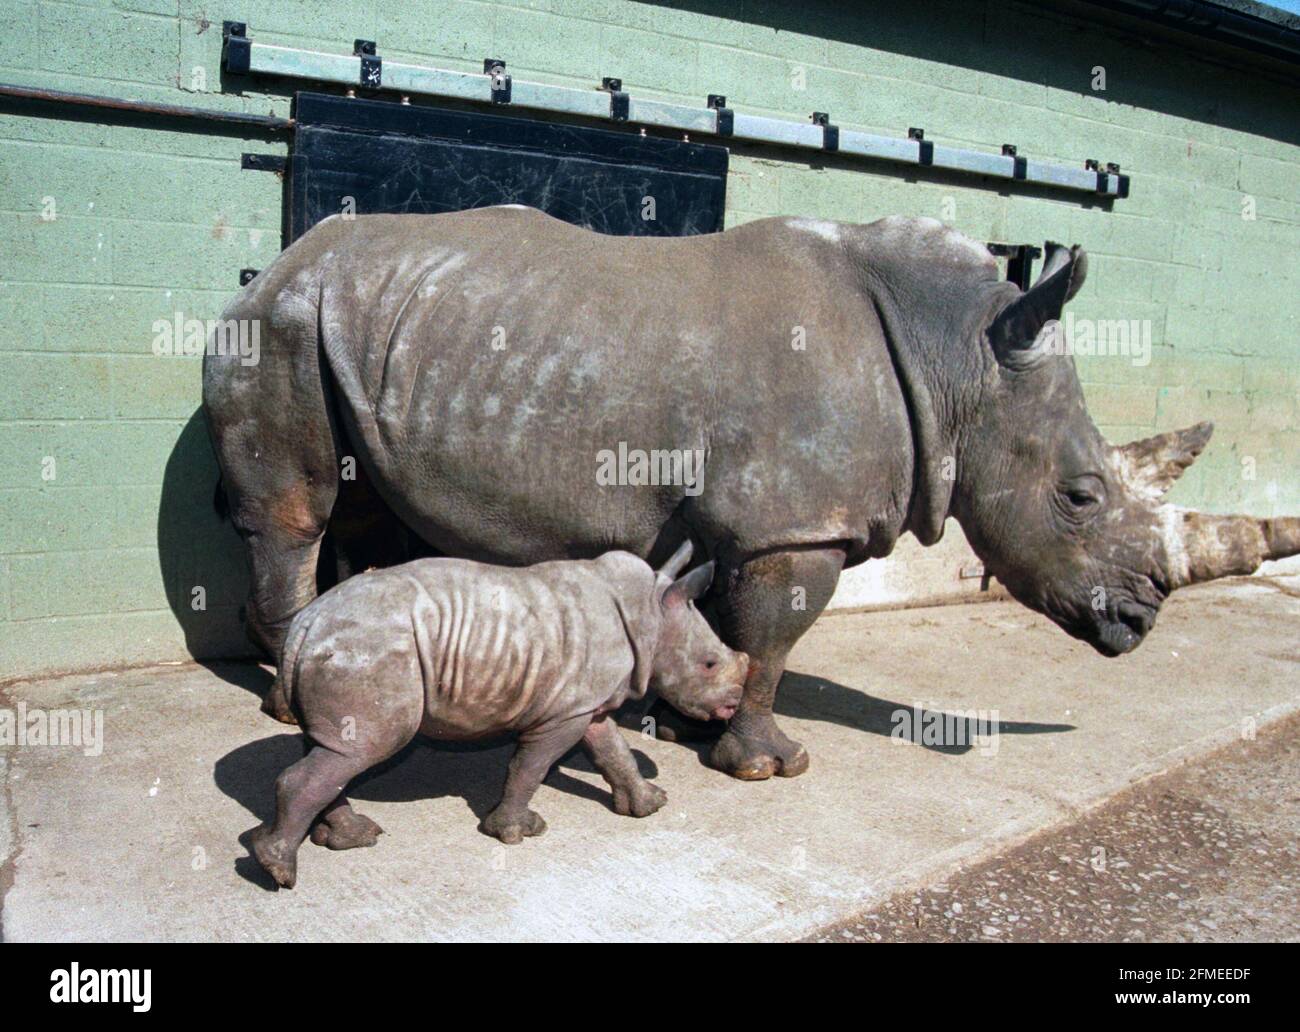 Un bébé rhinocéros blanc appelé 'Bhaslea' - Africain pour 'Don' - photographié avec sa mère 'Sula' au Parc zoologique de Marwell près de Winchester, Hants. C'est la première fois qu'un rhinocéros blanc est né en captivité en Grande-Bretagne à des parents élevés en captivité. Photo: mike Walker 1999 Banque D'Images